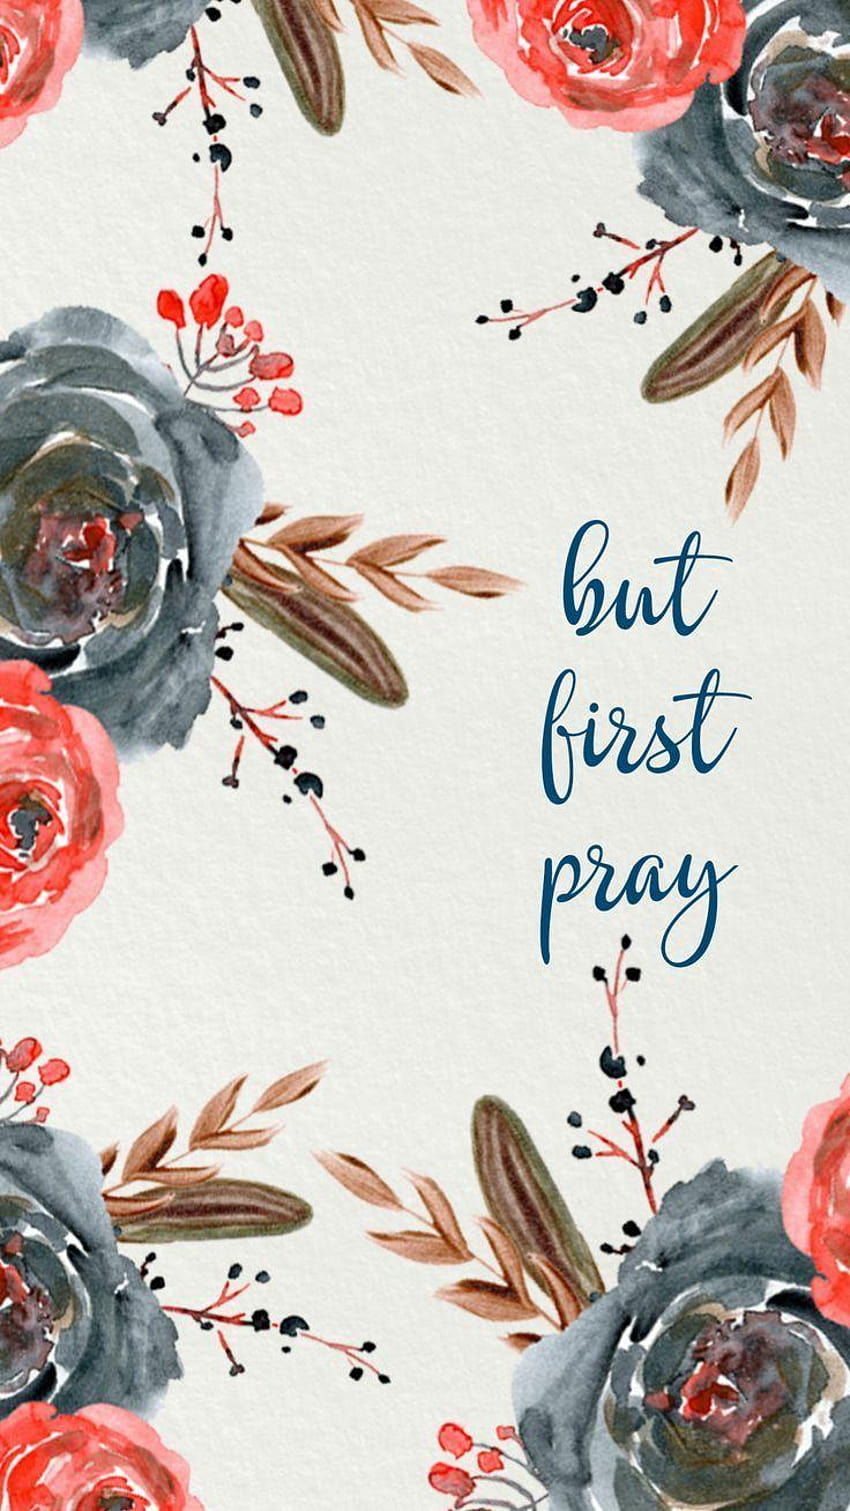 But first pray, praying bible verses HD phone wallpaper